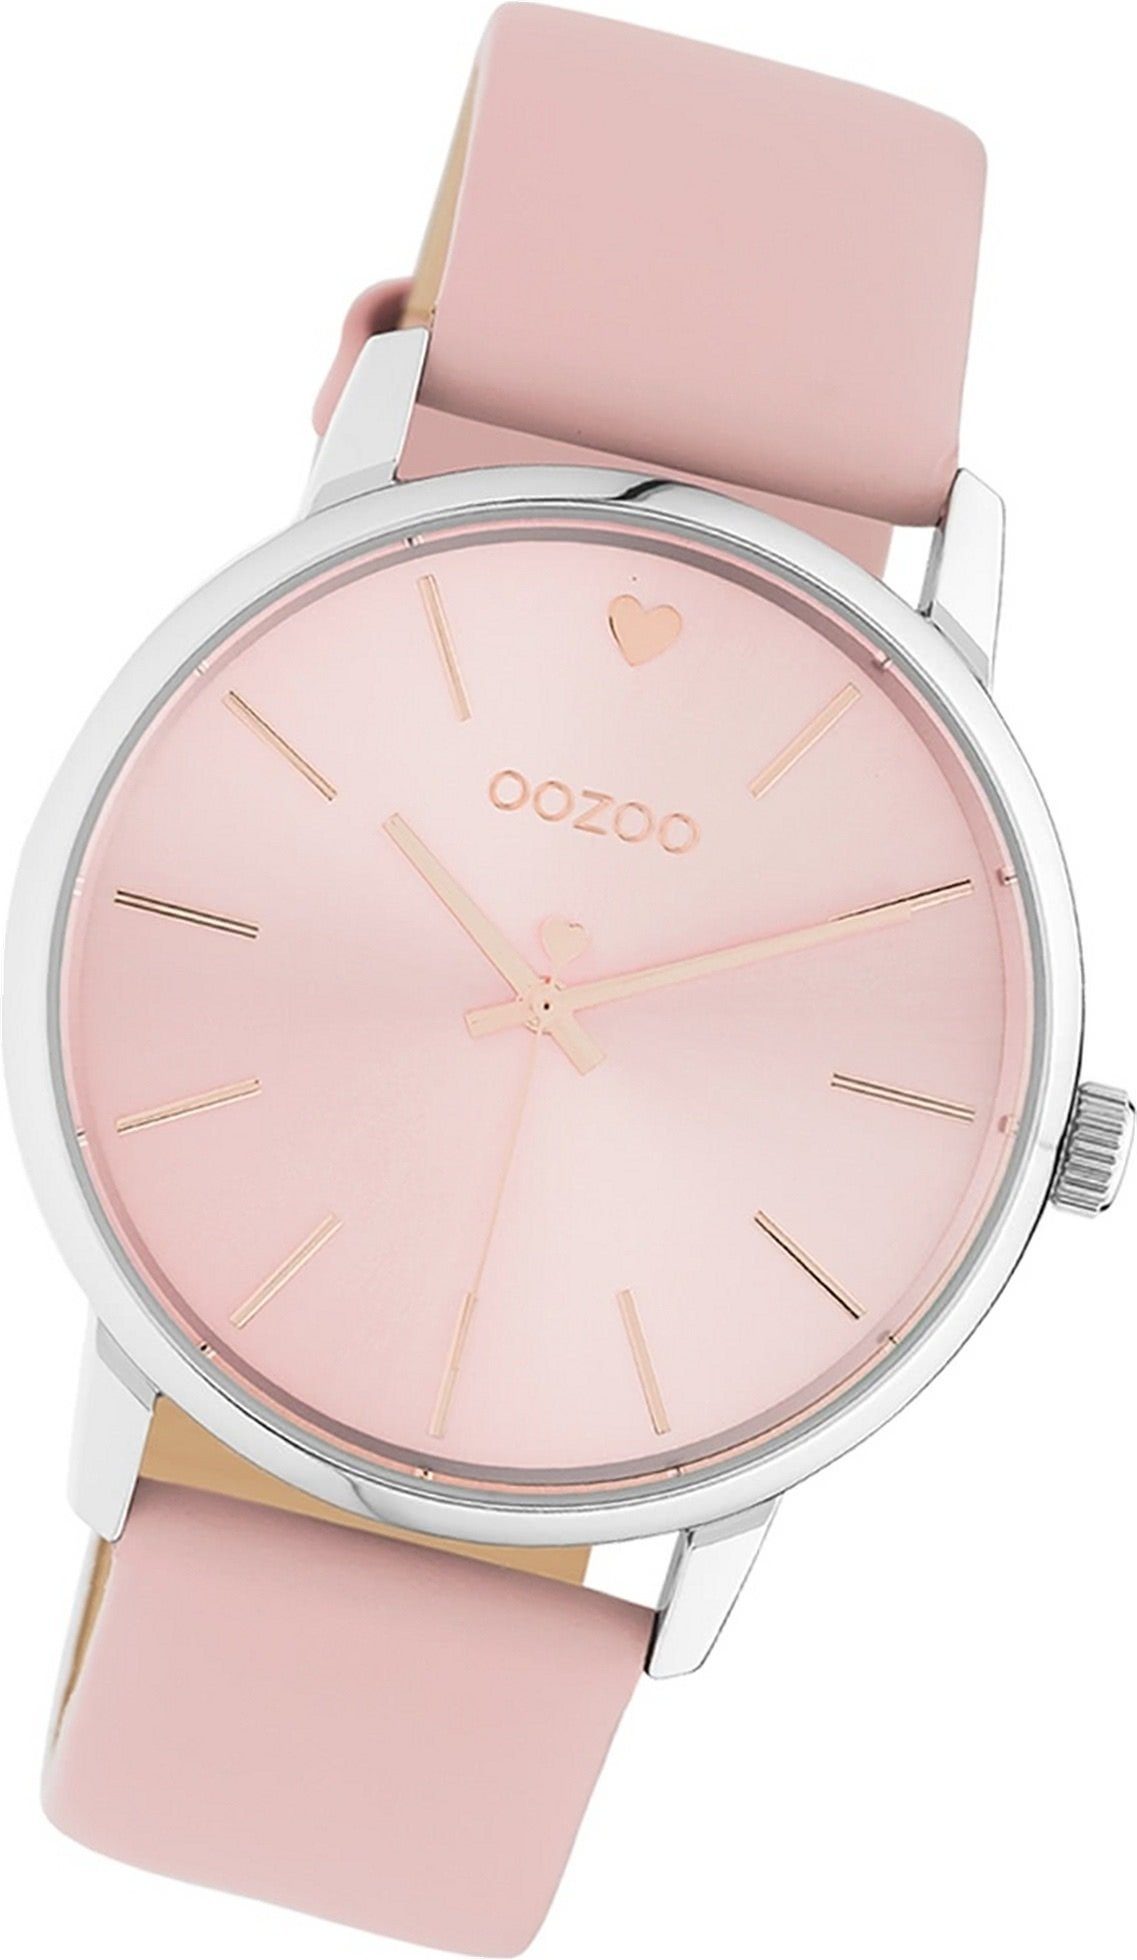 OOZOO Quarzuhr Oozoo Leder Damen Uhr C10926 Analog, Damenuhr Lederarmband pink, rundes Gehäuse, groß (ca. 40mm)